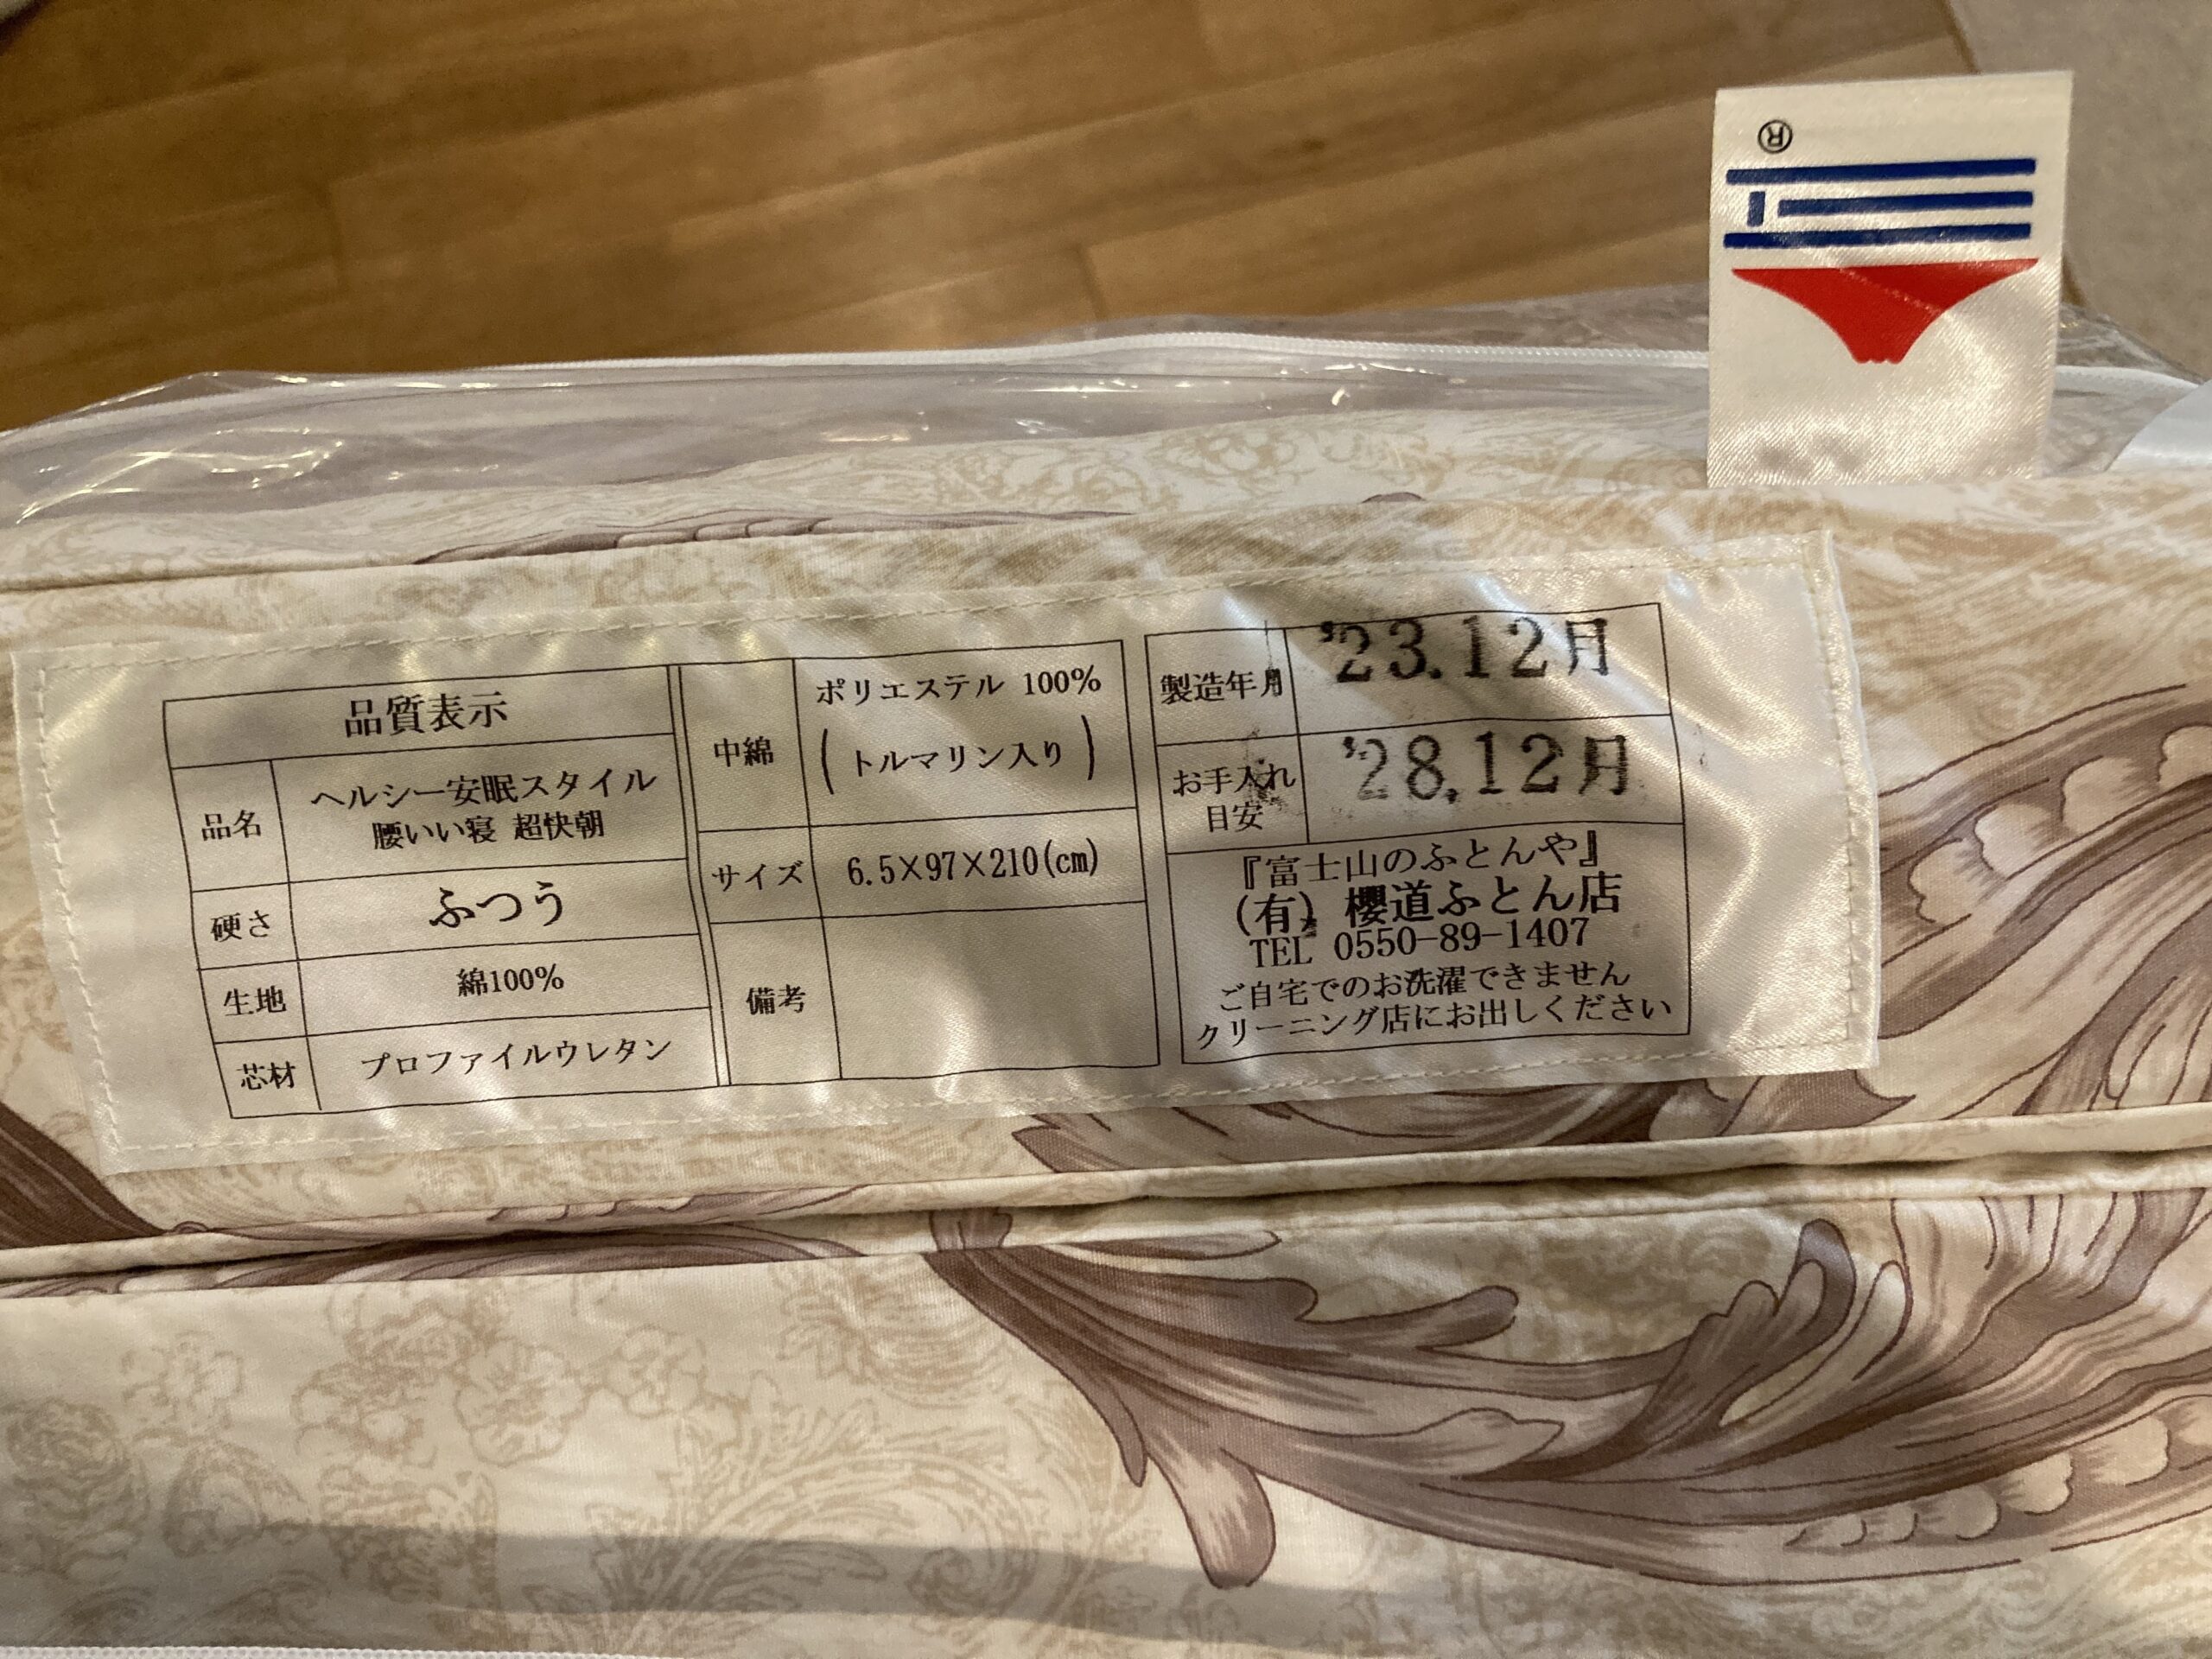 櫻道ふとん店の体圧分散マットレス「腰いい寝 超快朝」の商品タグ